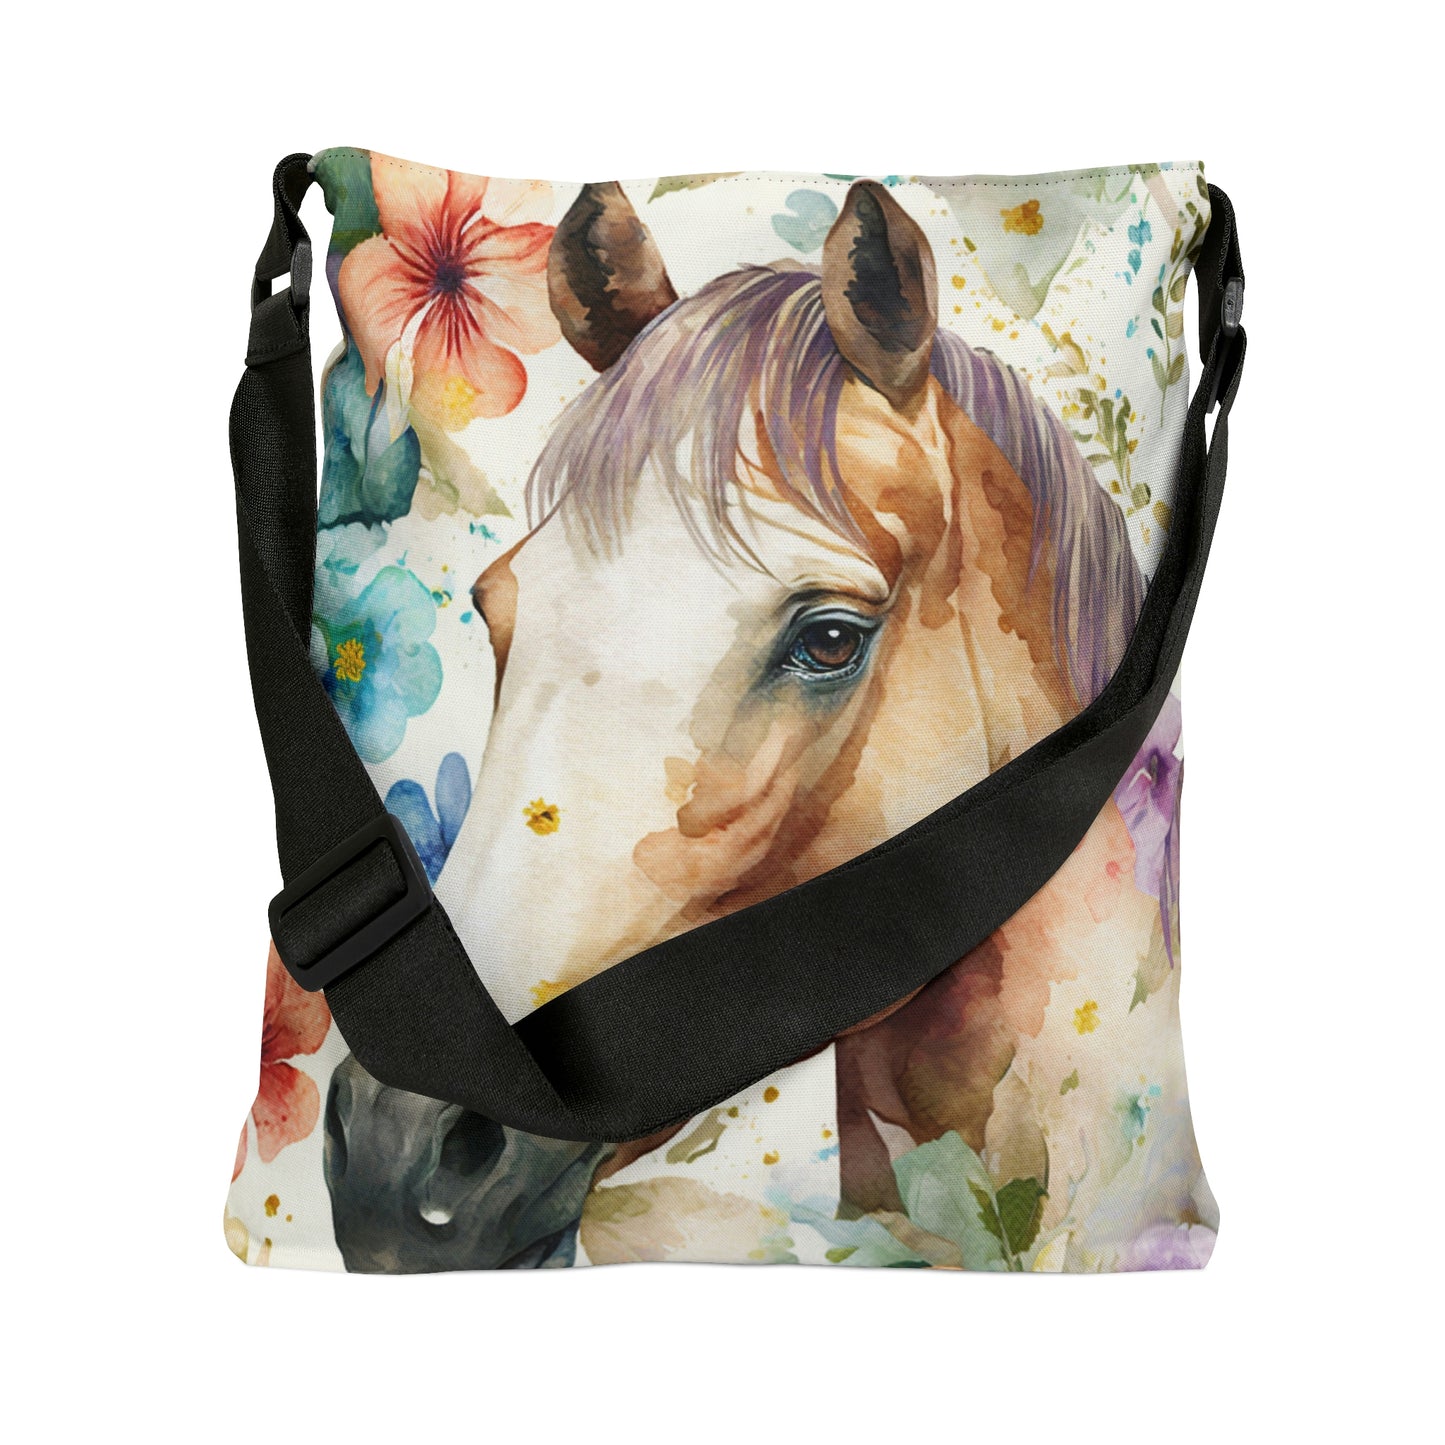 Horse Print Tote Bag /  Floral Tote Bag